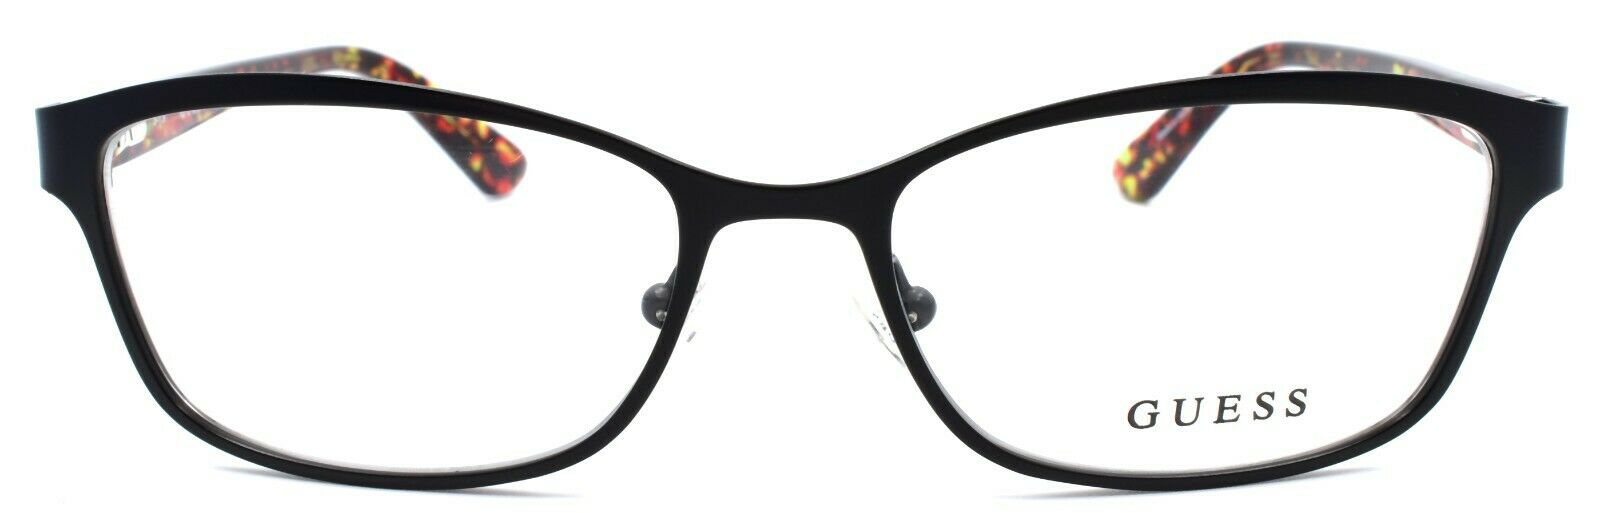 2-GUESS GU2548 002 Women's Eyeglasses Frames 52-16-135 Matte Black-664689787715-IKSpecs